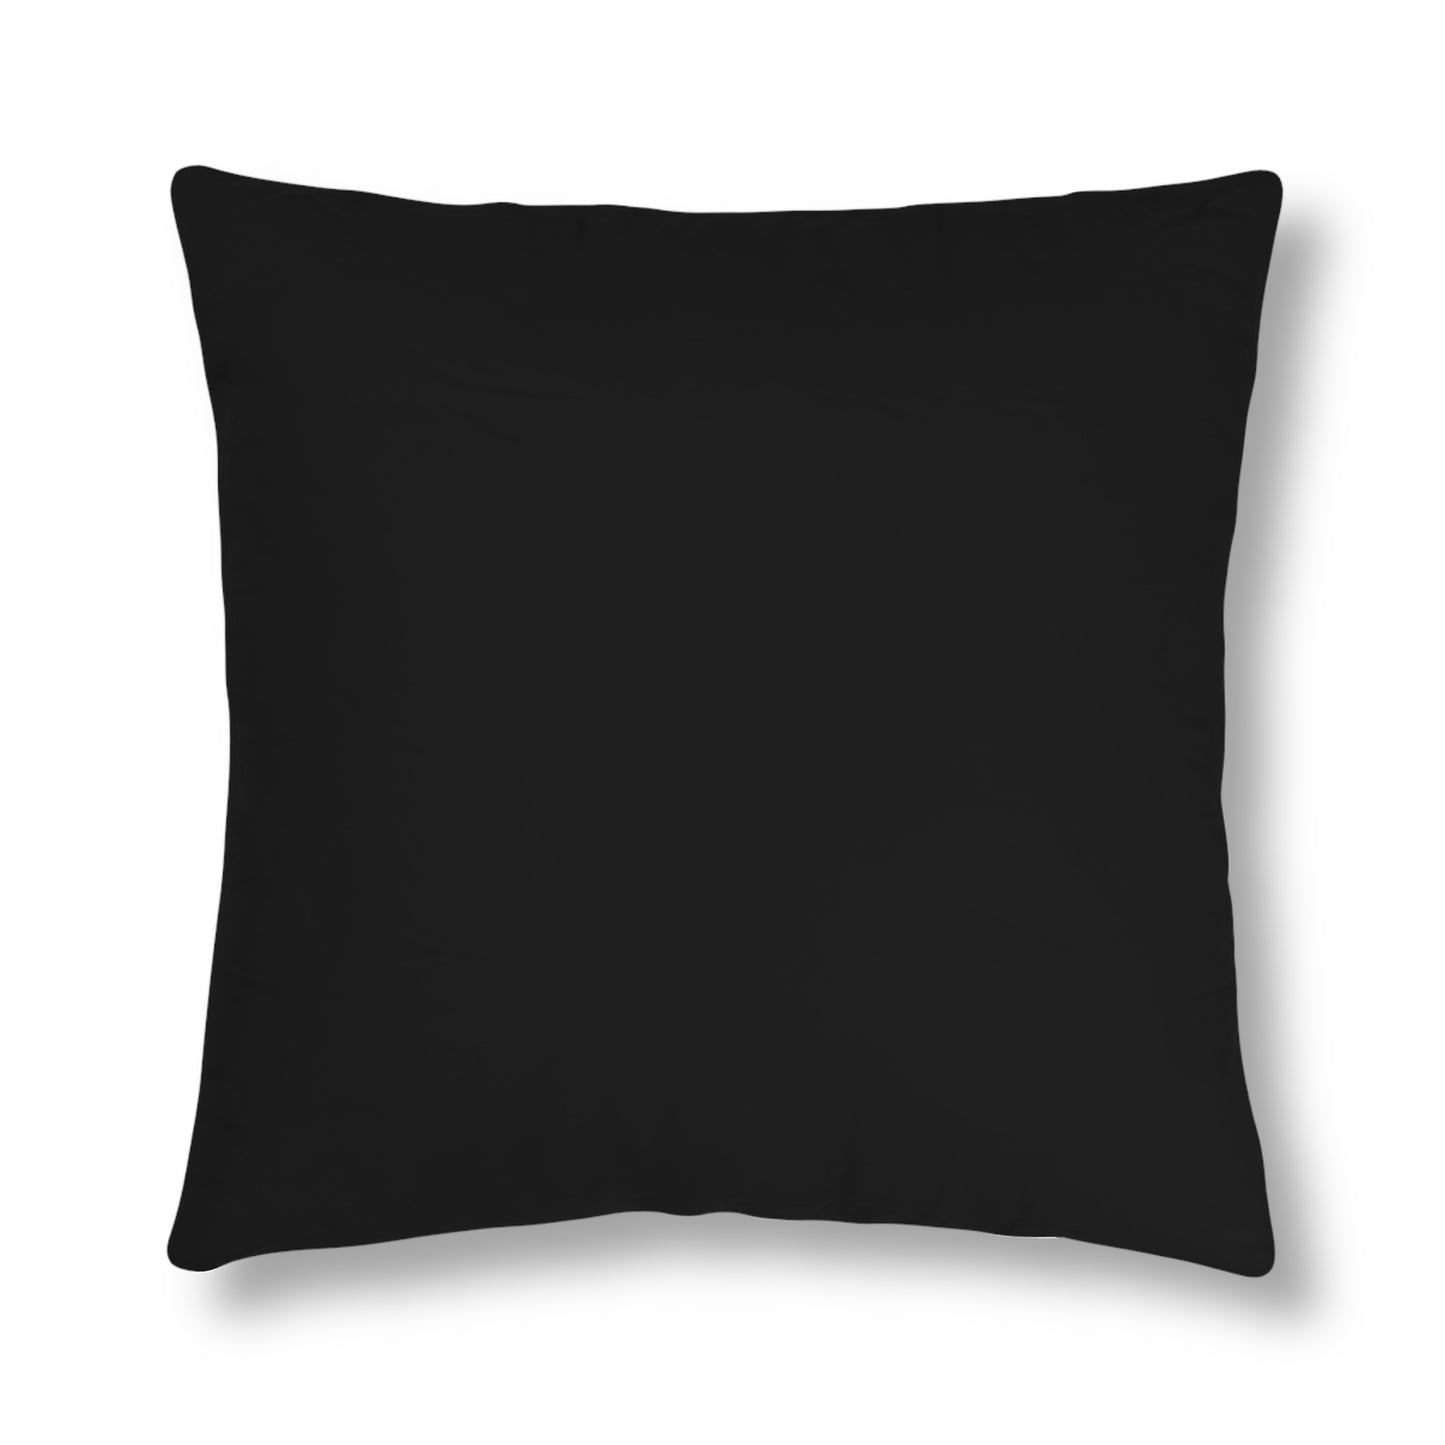 True Hustler 4 Lyfe All-Weather Decorative Pillows